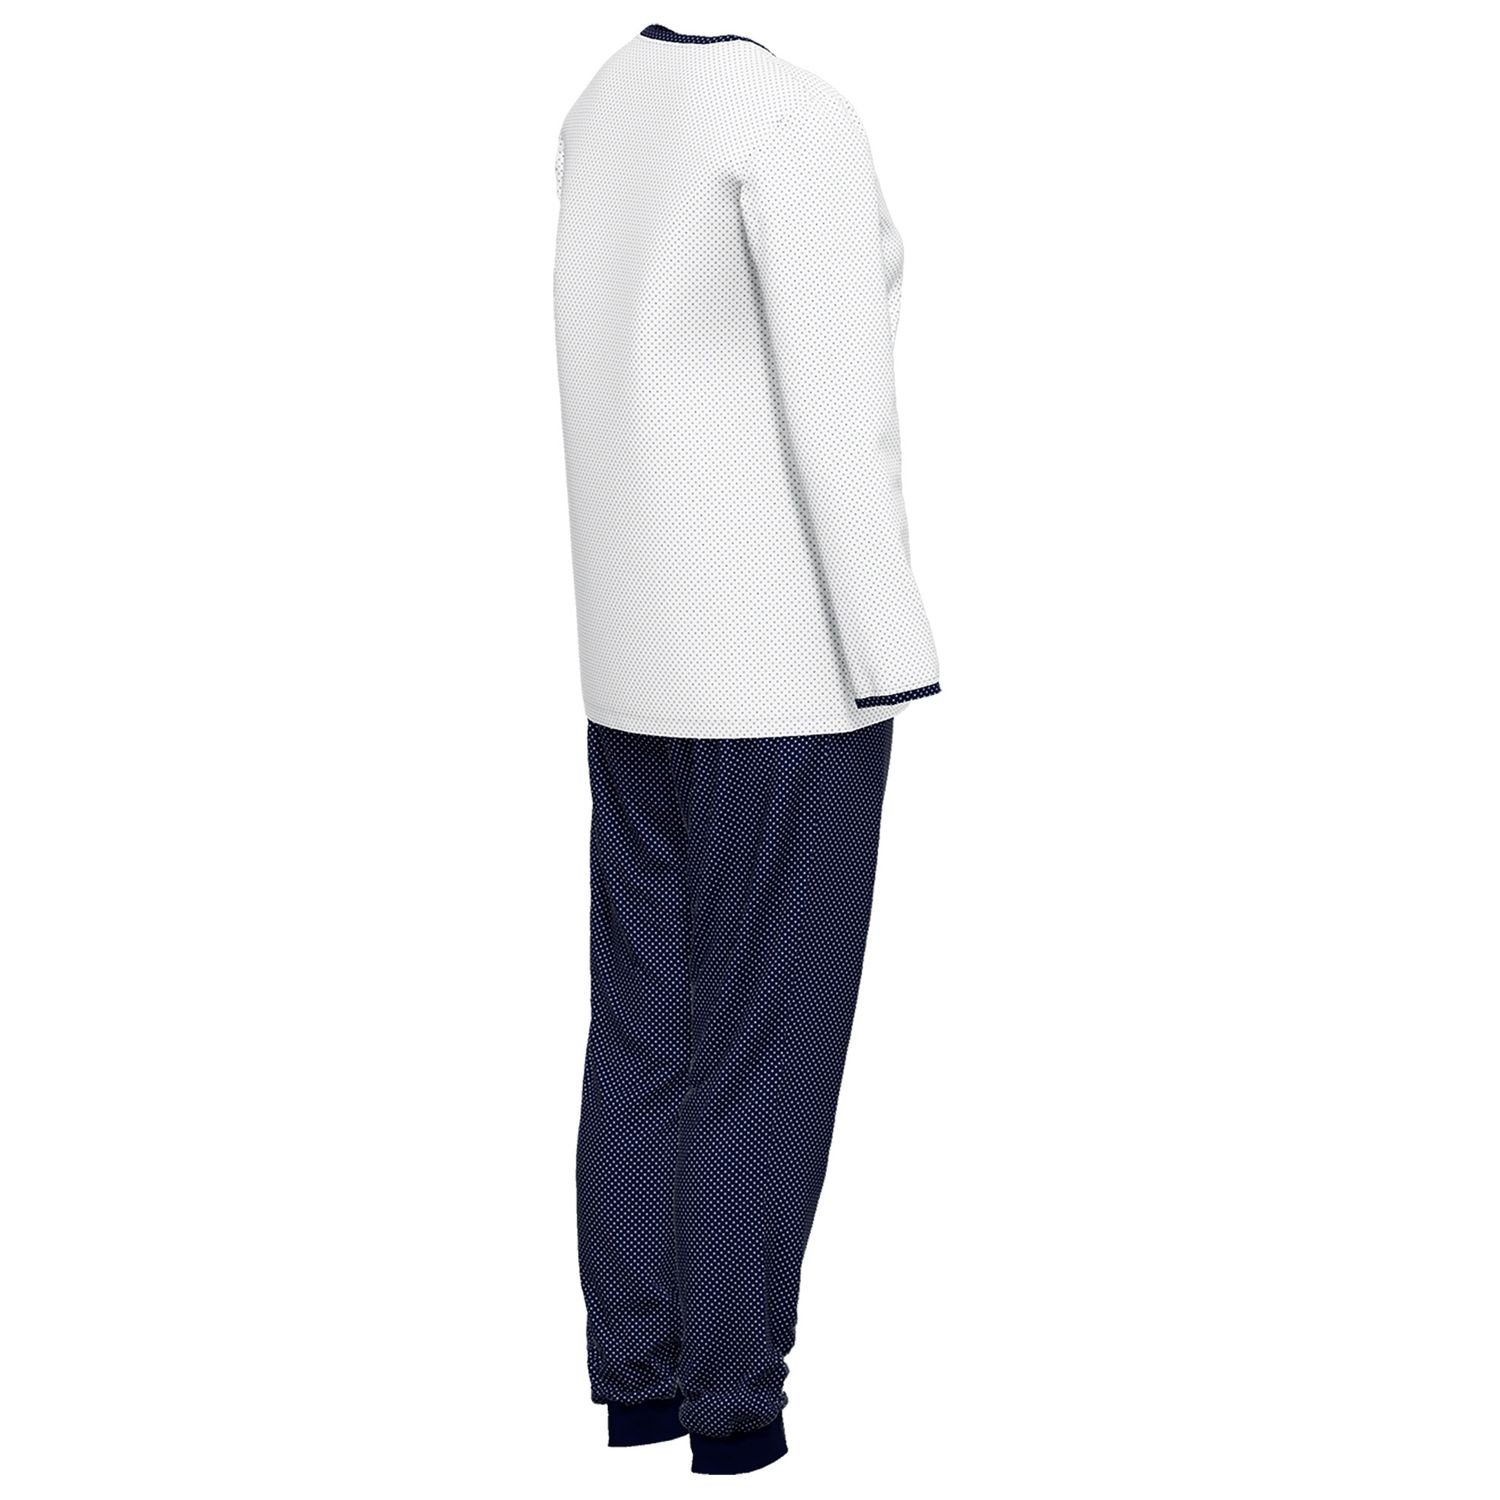 GÖTZBURG Schlafanzug mit gepunktet Henley-Auschnitt, bequem, weiß Baumolle / weich, reine langarm, Knöpfe, navy